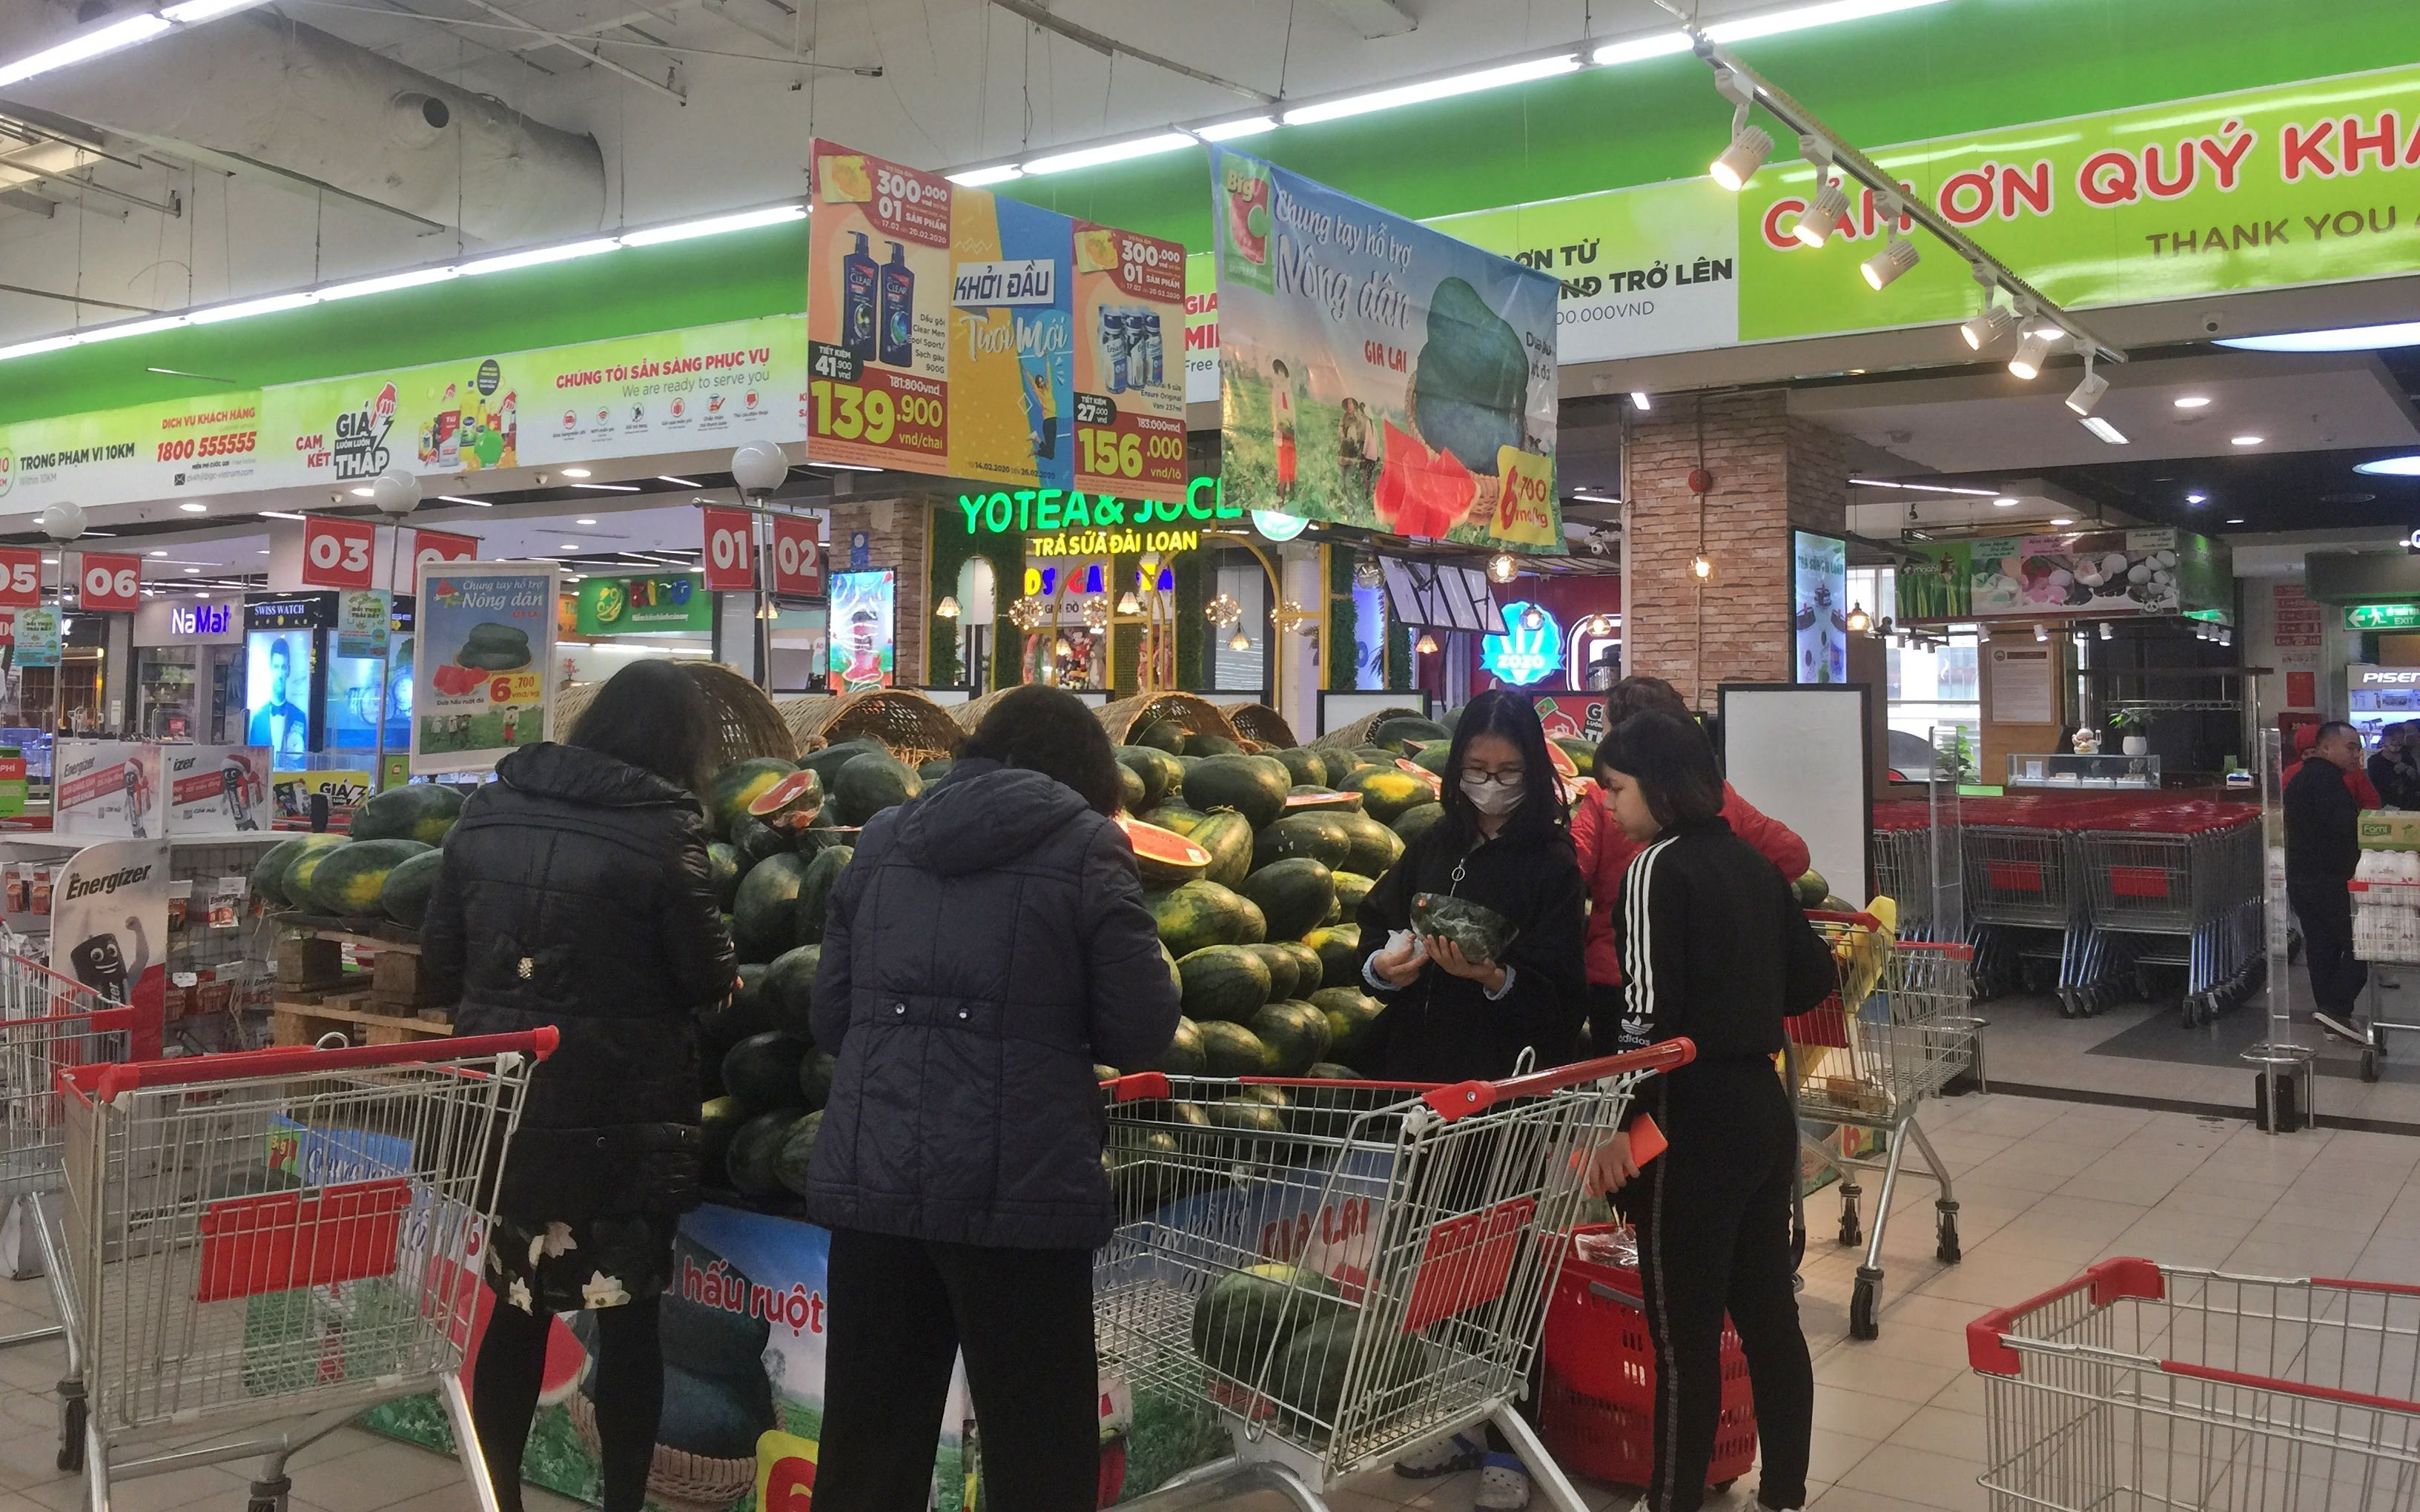 Giá hoa quả trong siêu thị giảm 1/3 so với thời điểm trước Tết, dưa hấu còn 6.700 đồng/kg